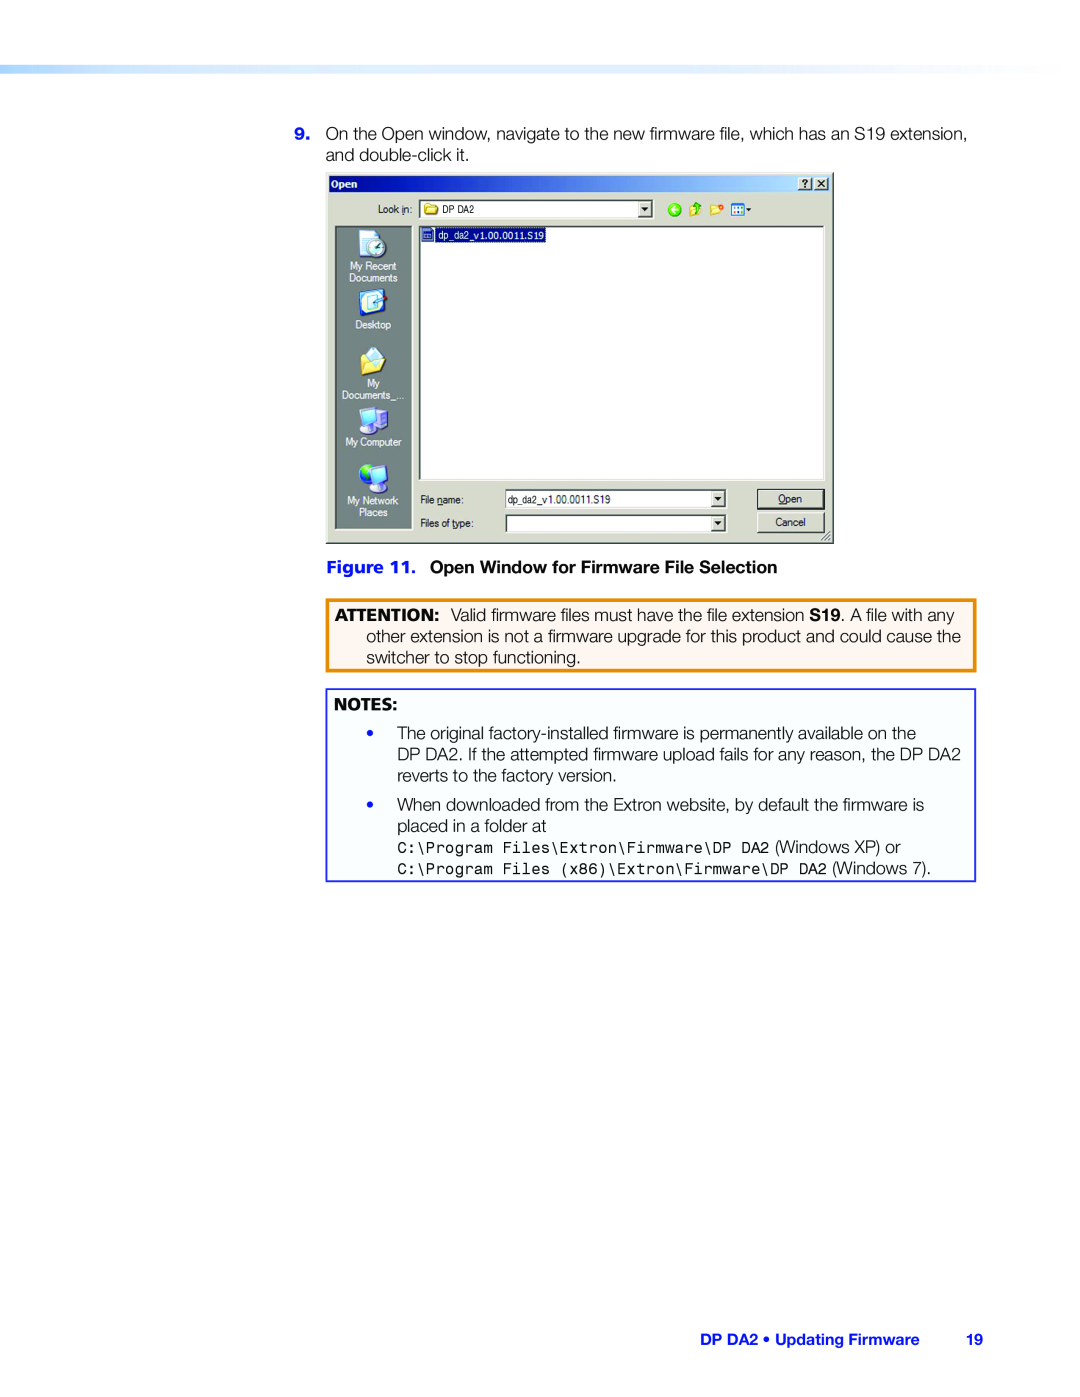 Extron electronic manual DP DA2 Updating Firmware 